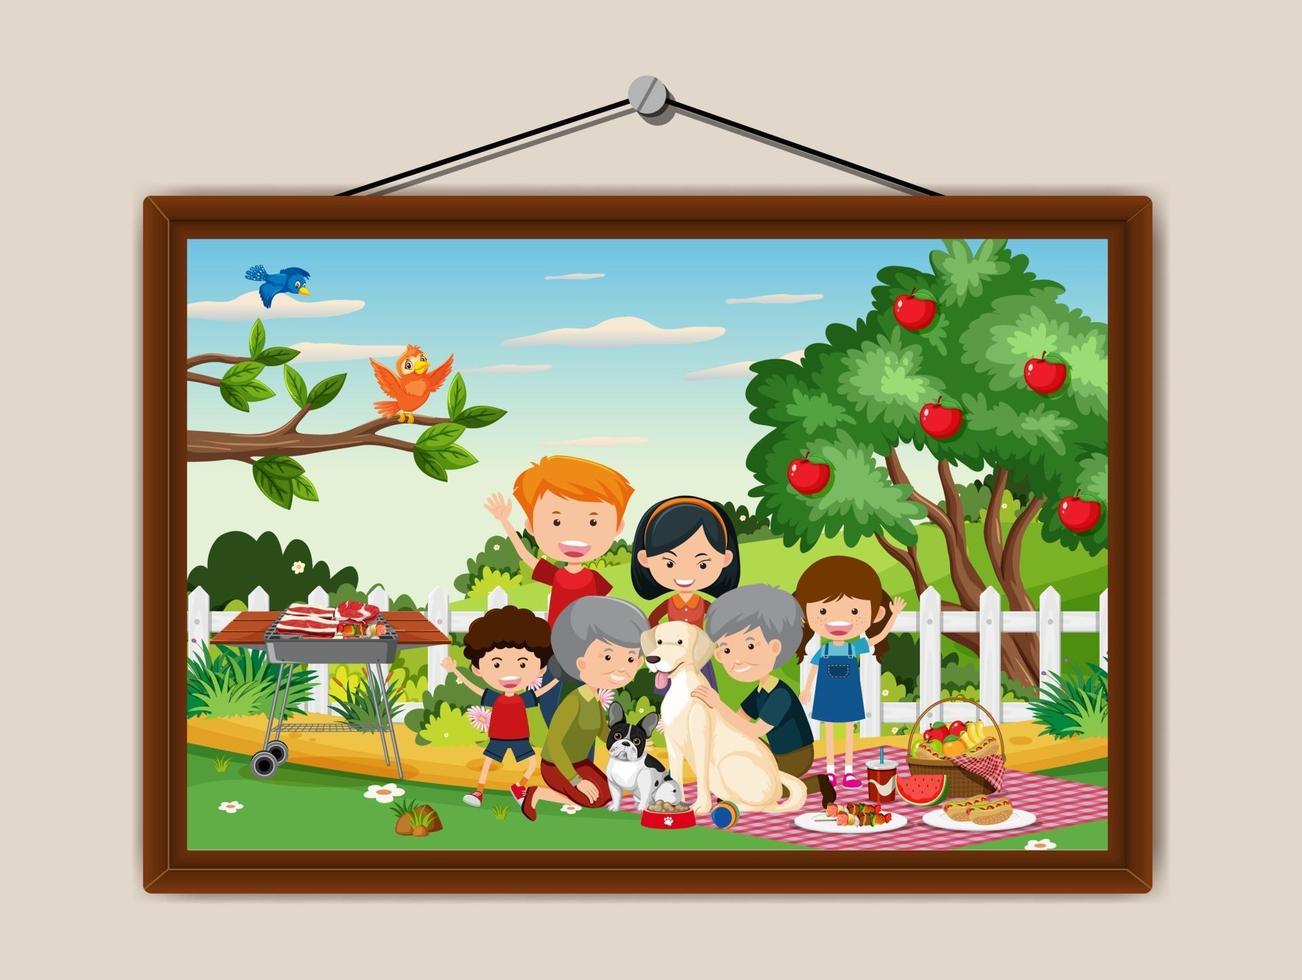 Happy Family Picknick Outdoor-Szene in einem Fotorahmen an der Wand hängen vektor